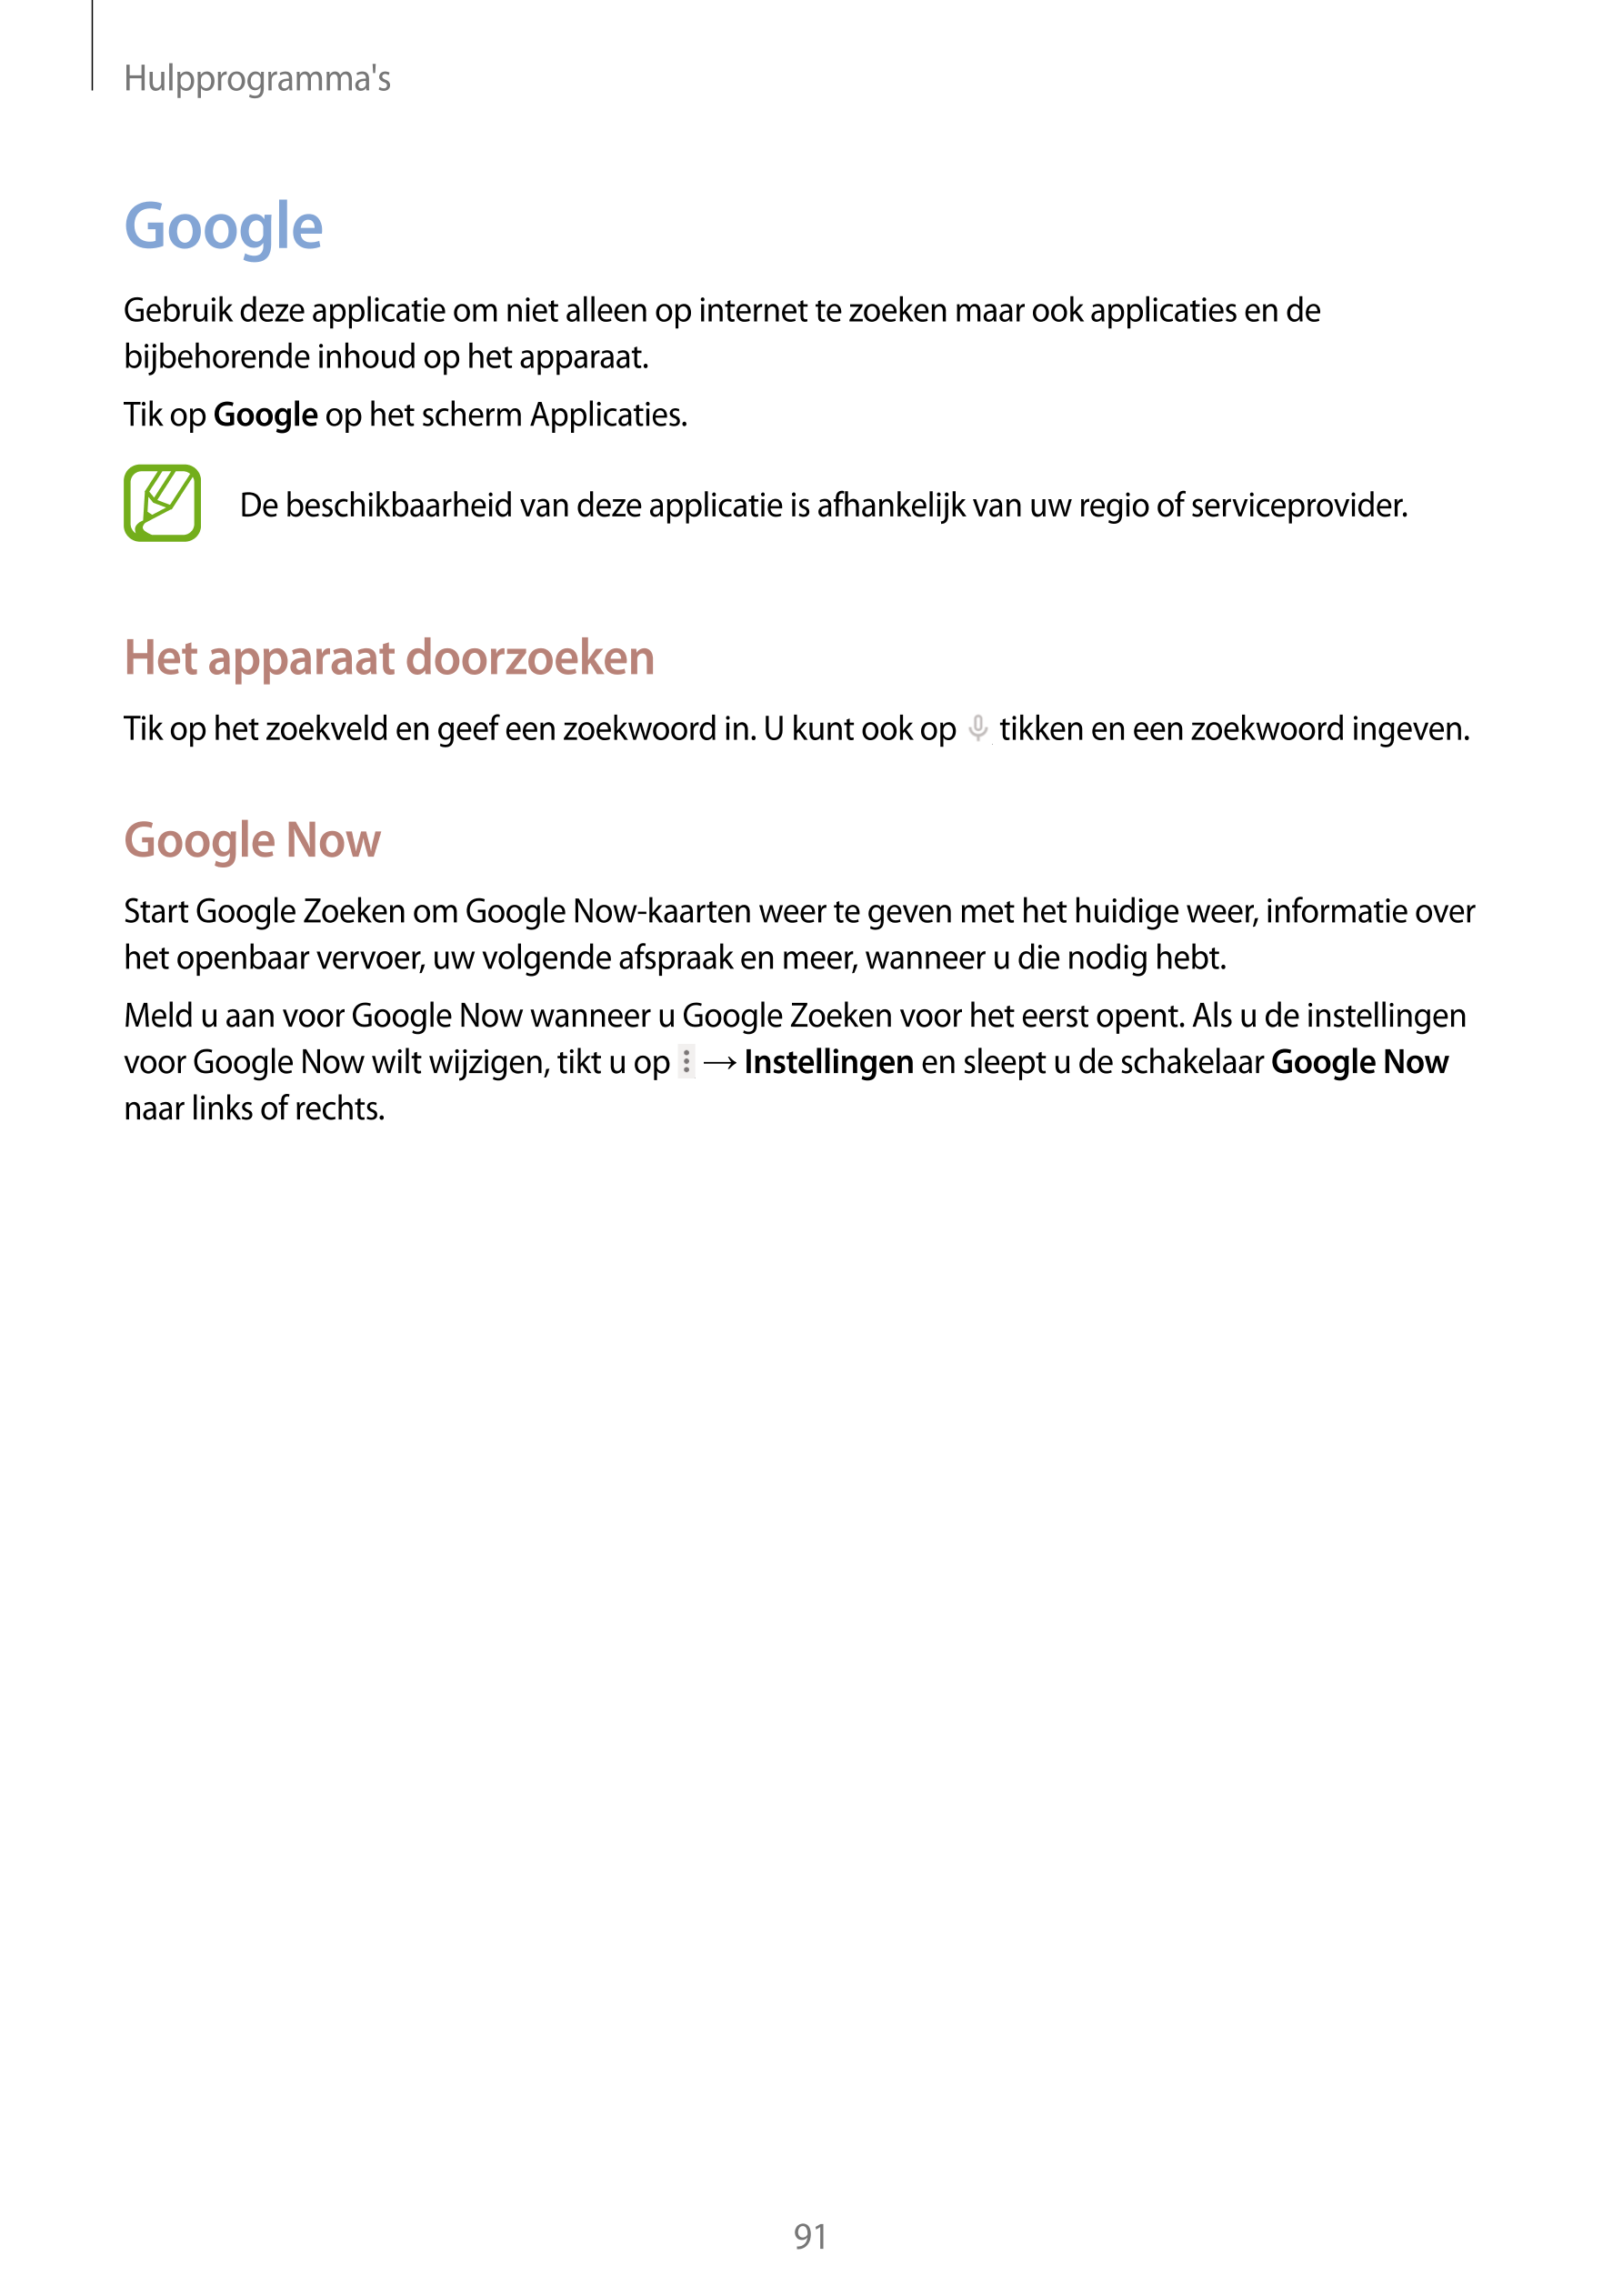 Hulpprogramma's
Google
Gebruik deze applicatie om niet alleen op internet te zoeken maar ook applicaties en de 
bijbehorende inh